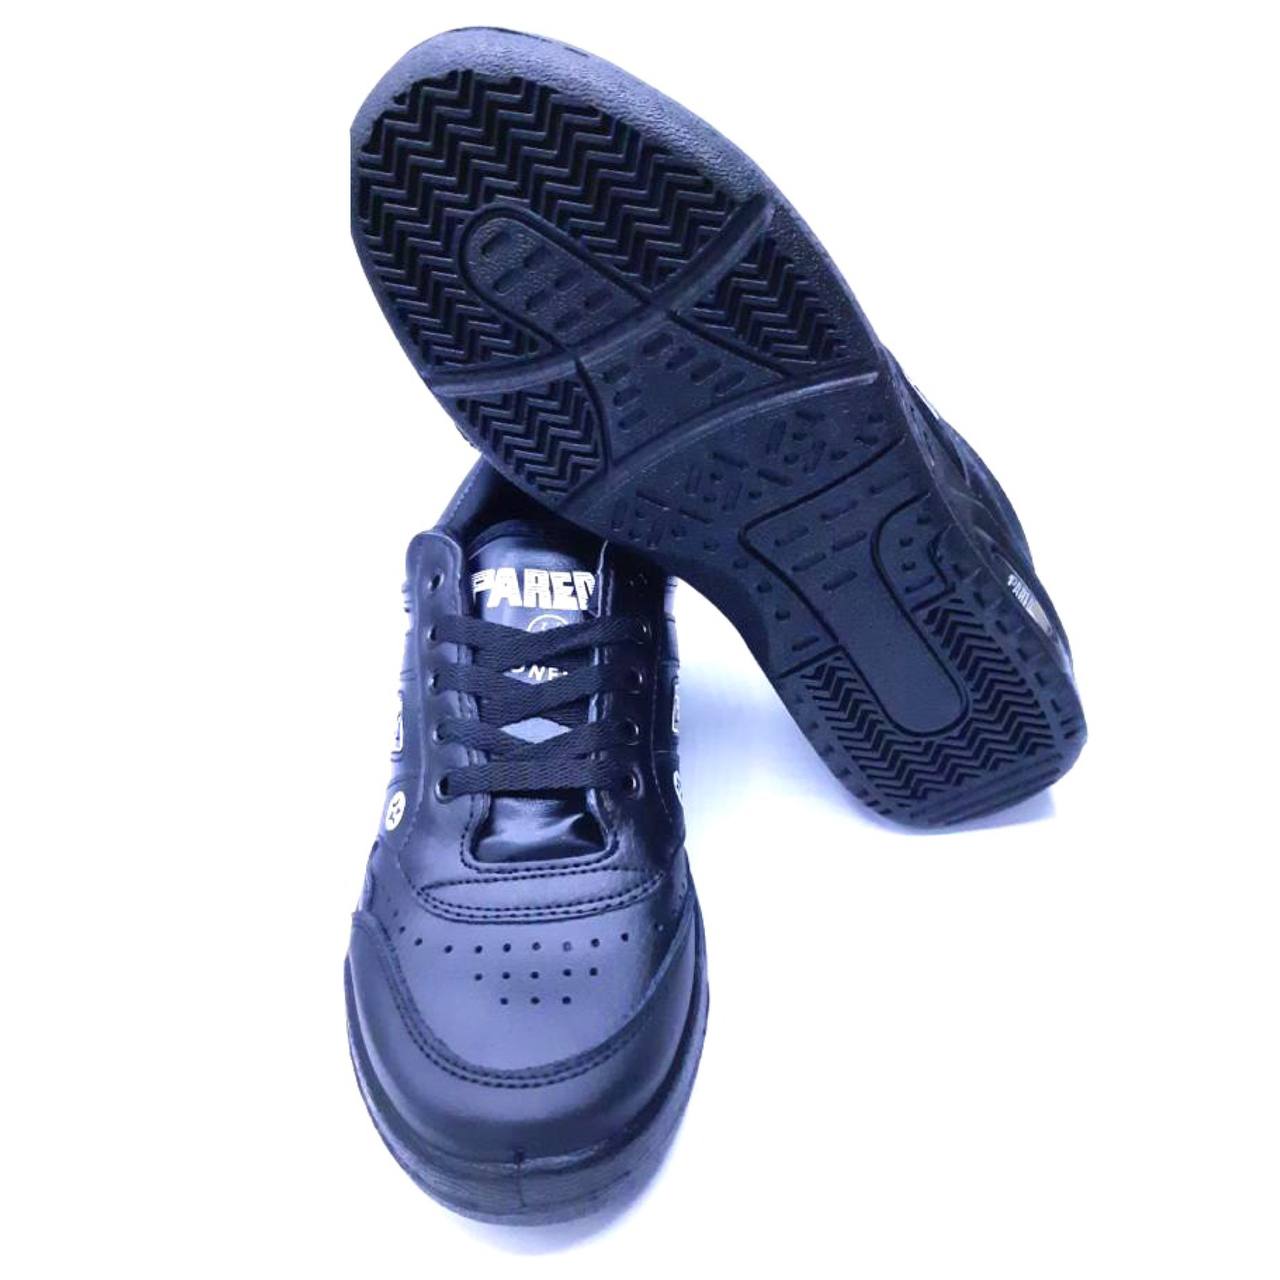 Calzados Paredes: Zapatillas de calidad a buen precio con envío en